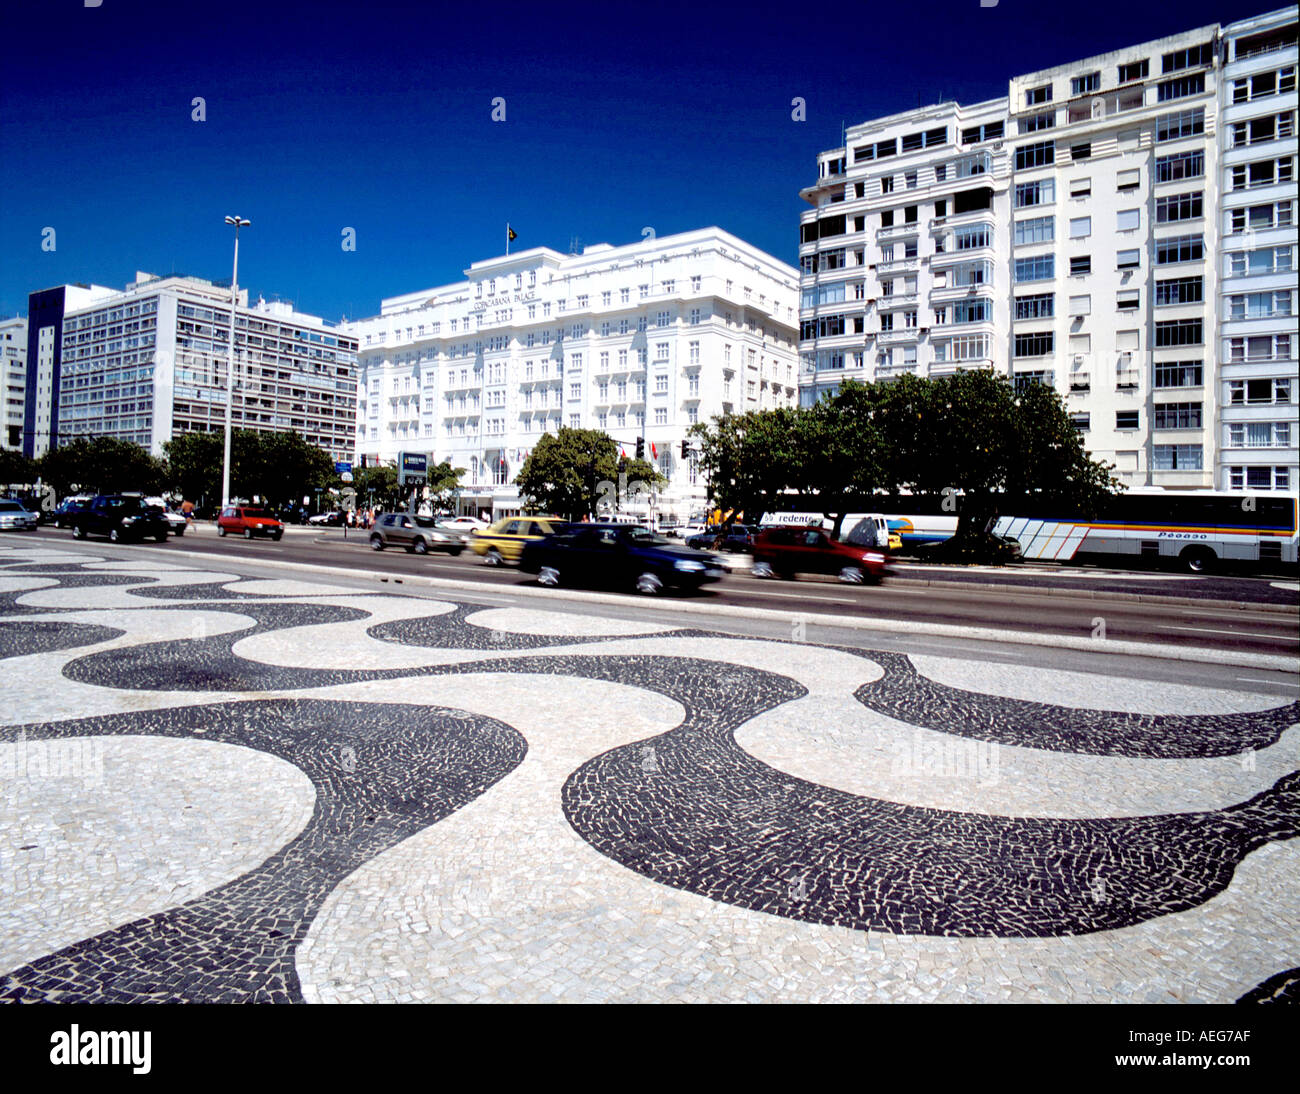 Travel Brasil copacabana palace hotel facade facades sunny rio de janeiro Stock Photo